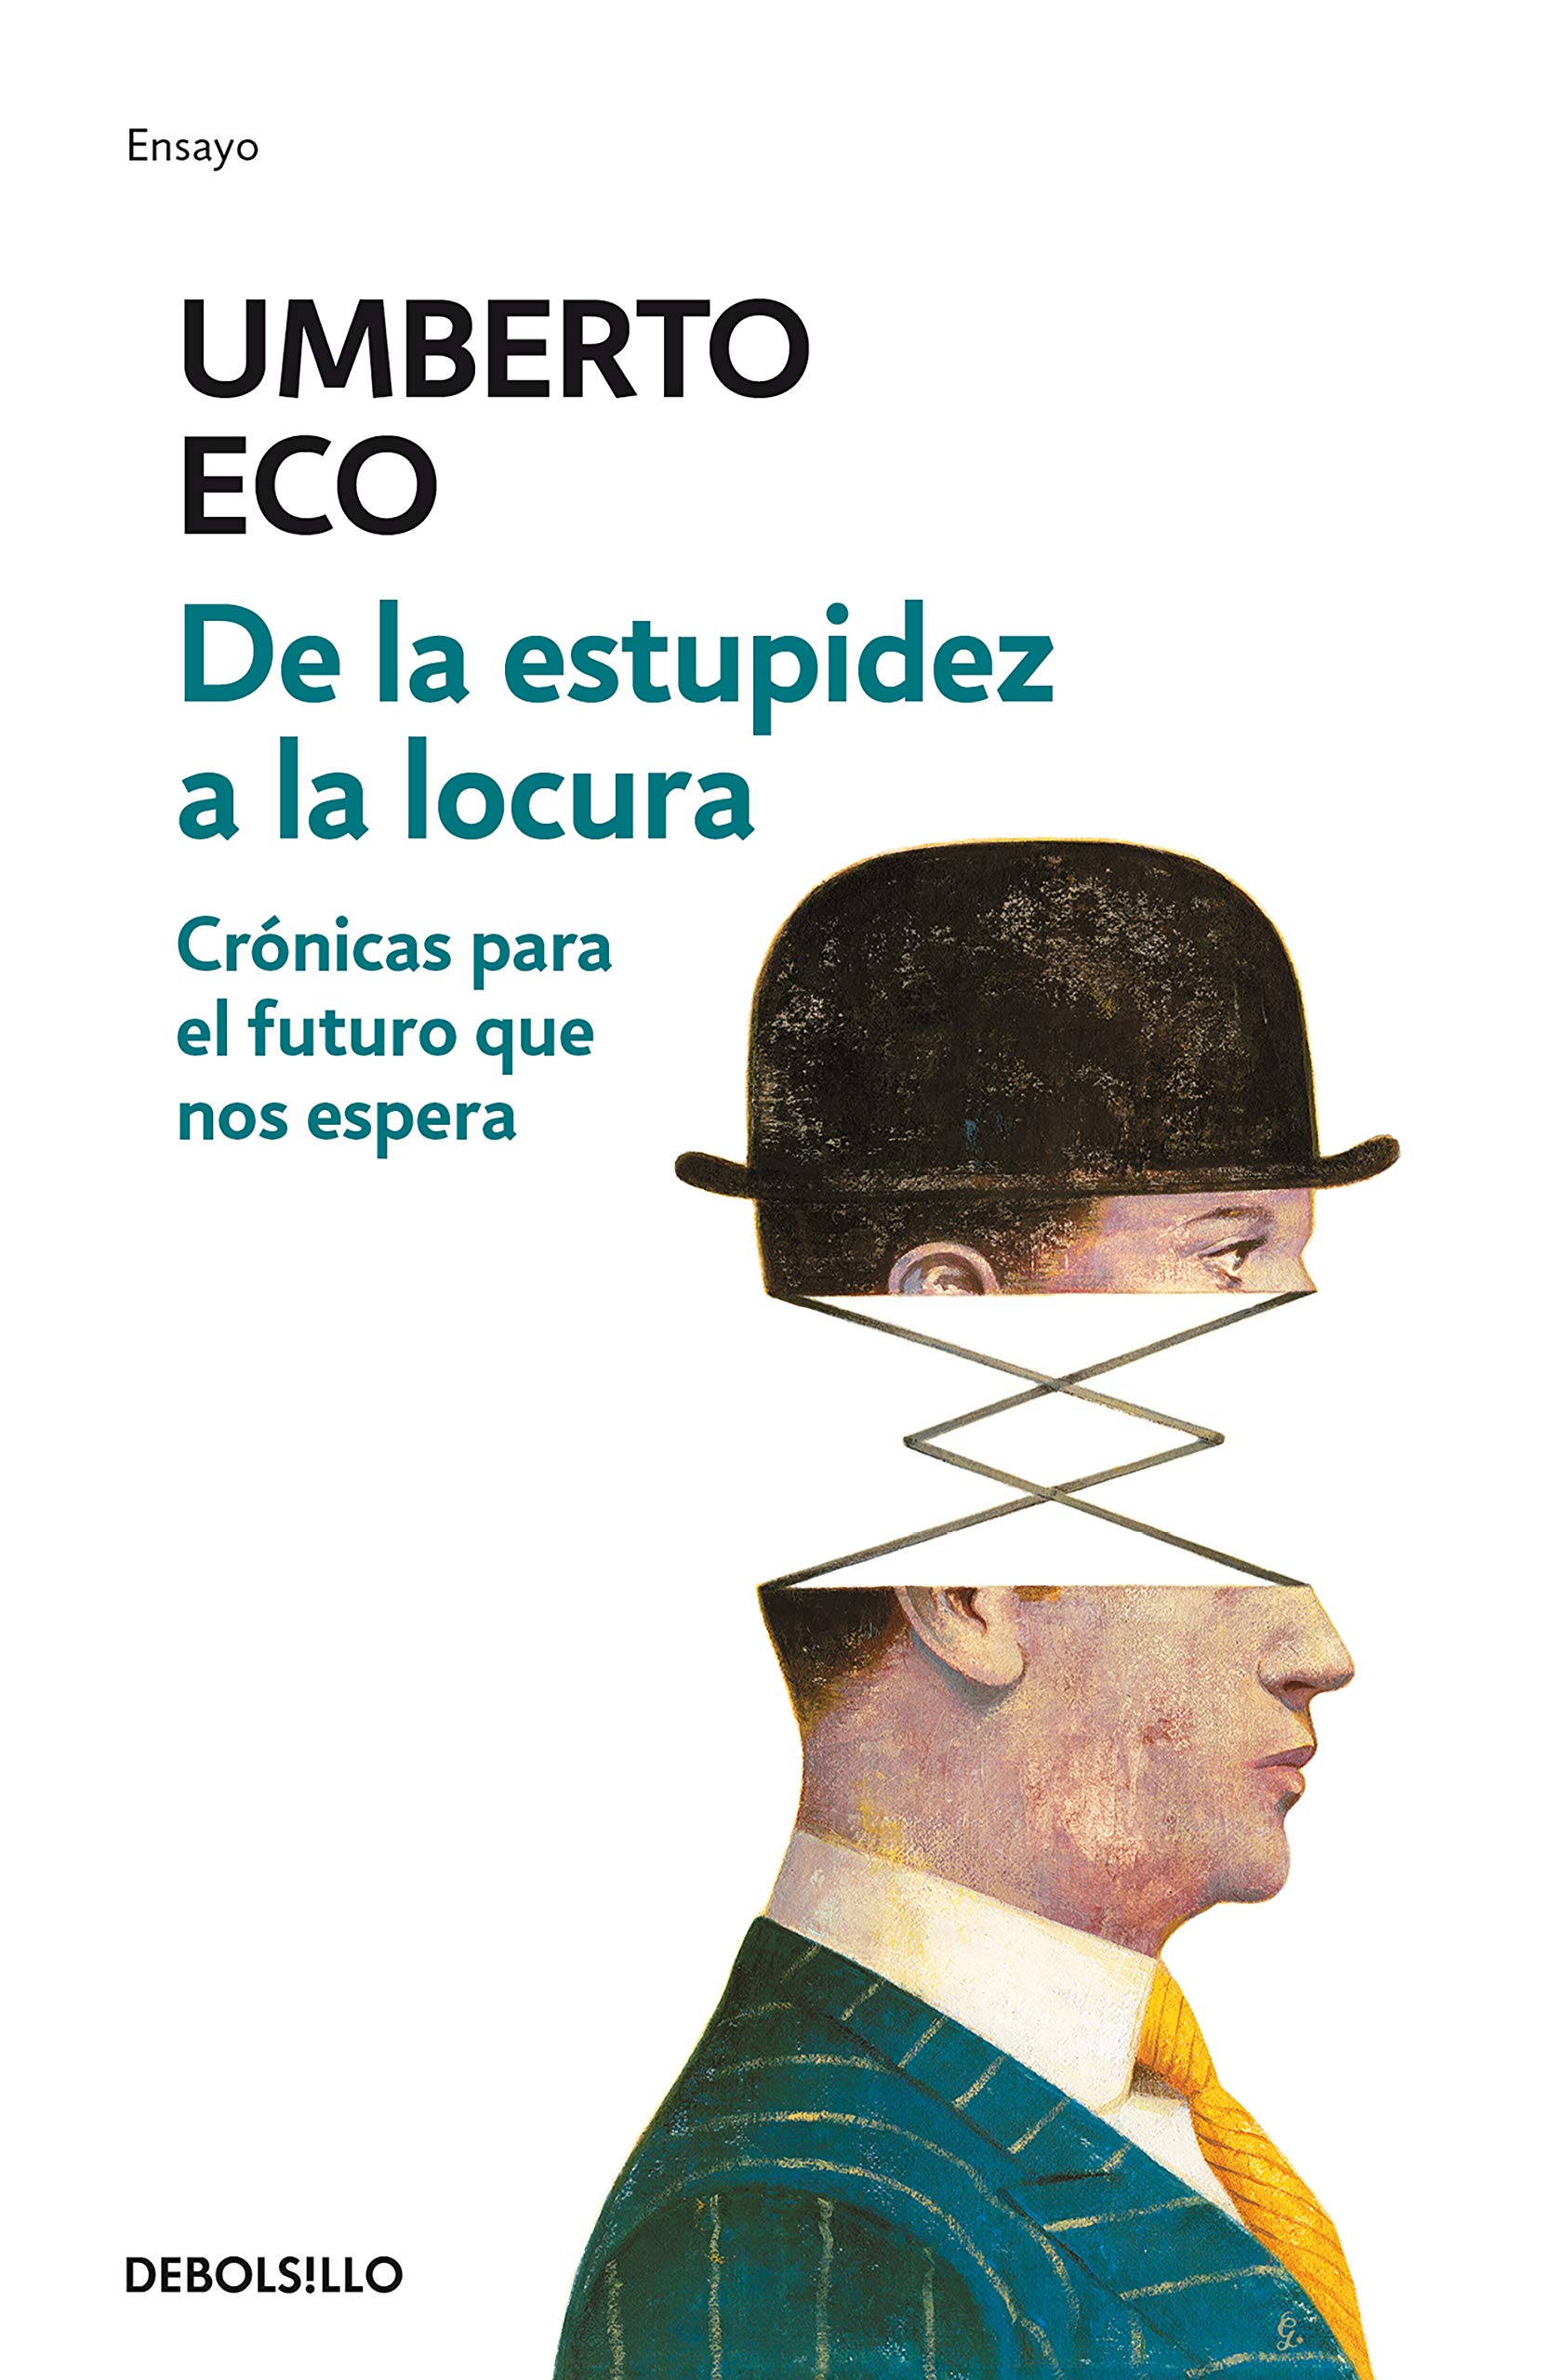 Zenda recomienda: De la estupidez a la locura, de Umberto Eco